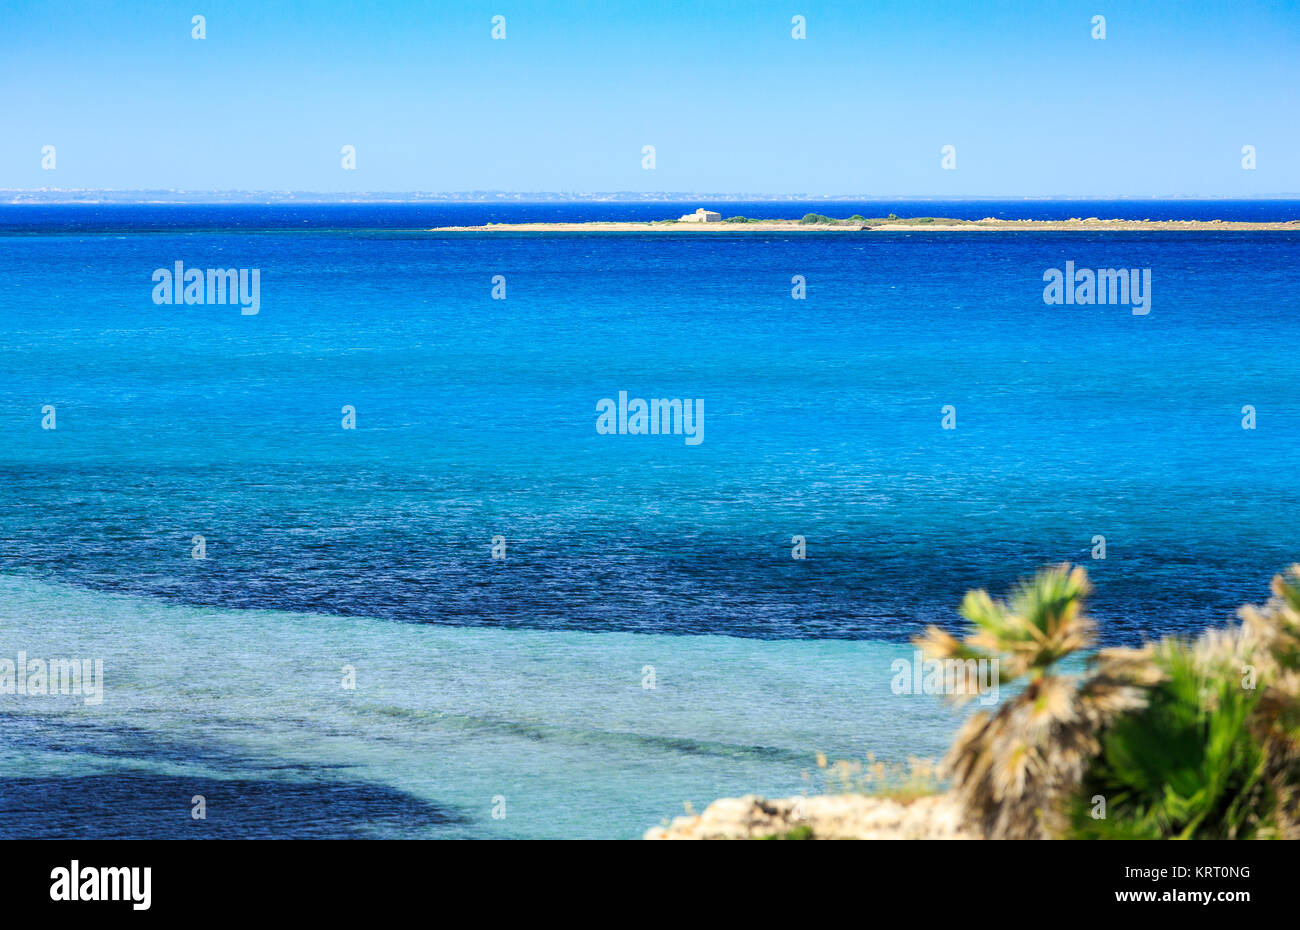 Isola di Vendicari, Sicily, Italy Stock Photo